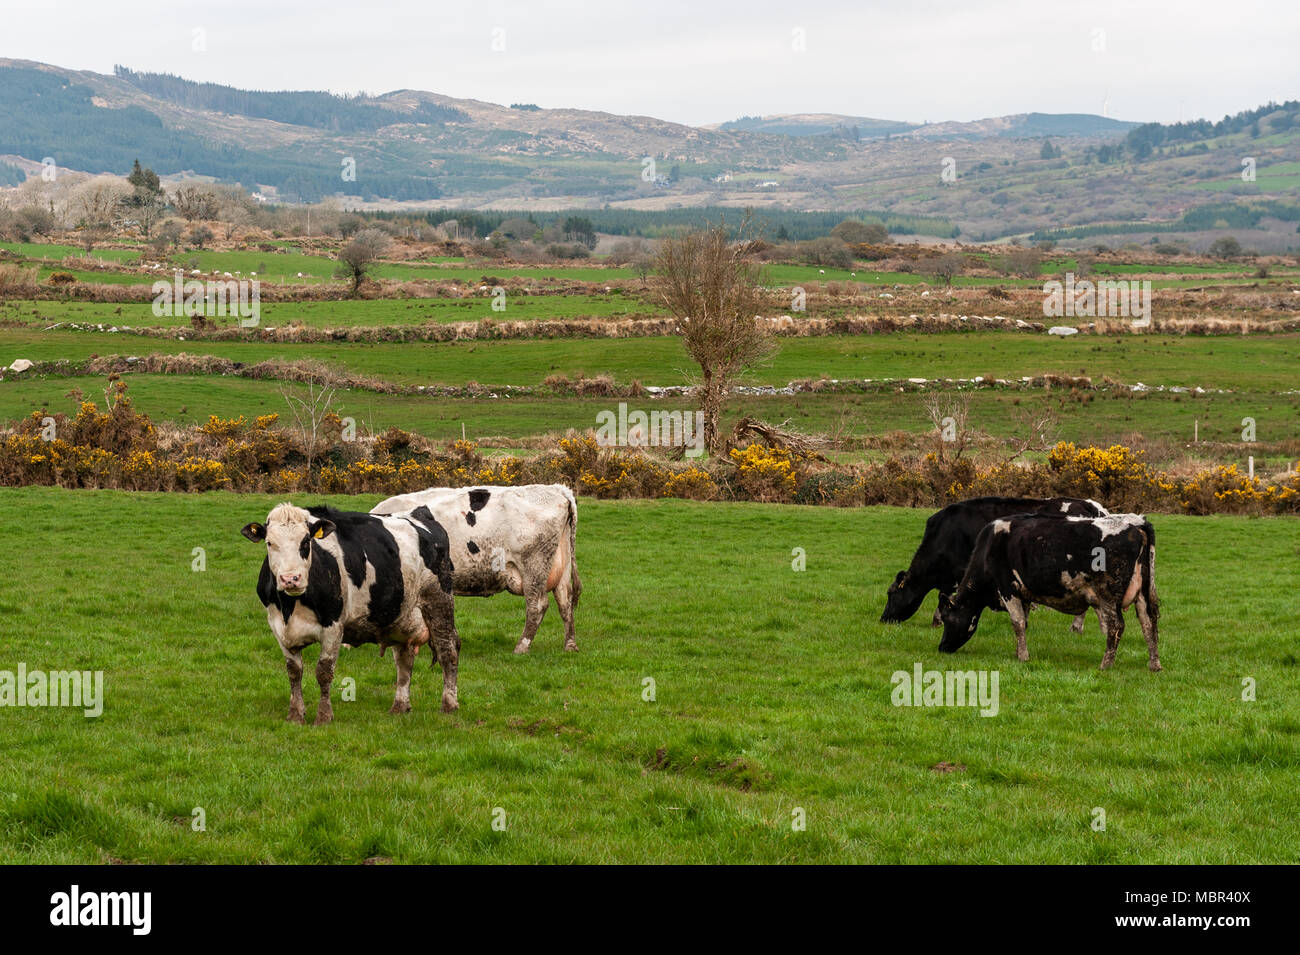 Les vaches laitières/le pâturage du bétail dans un champ d'herbe verte/fourrage pendant la crise de Ballydehob, West Cork, Irlande with copy space Banque D'Images